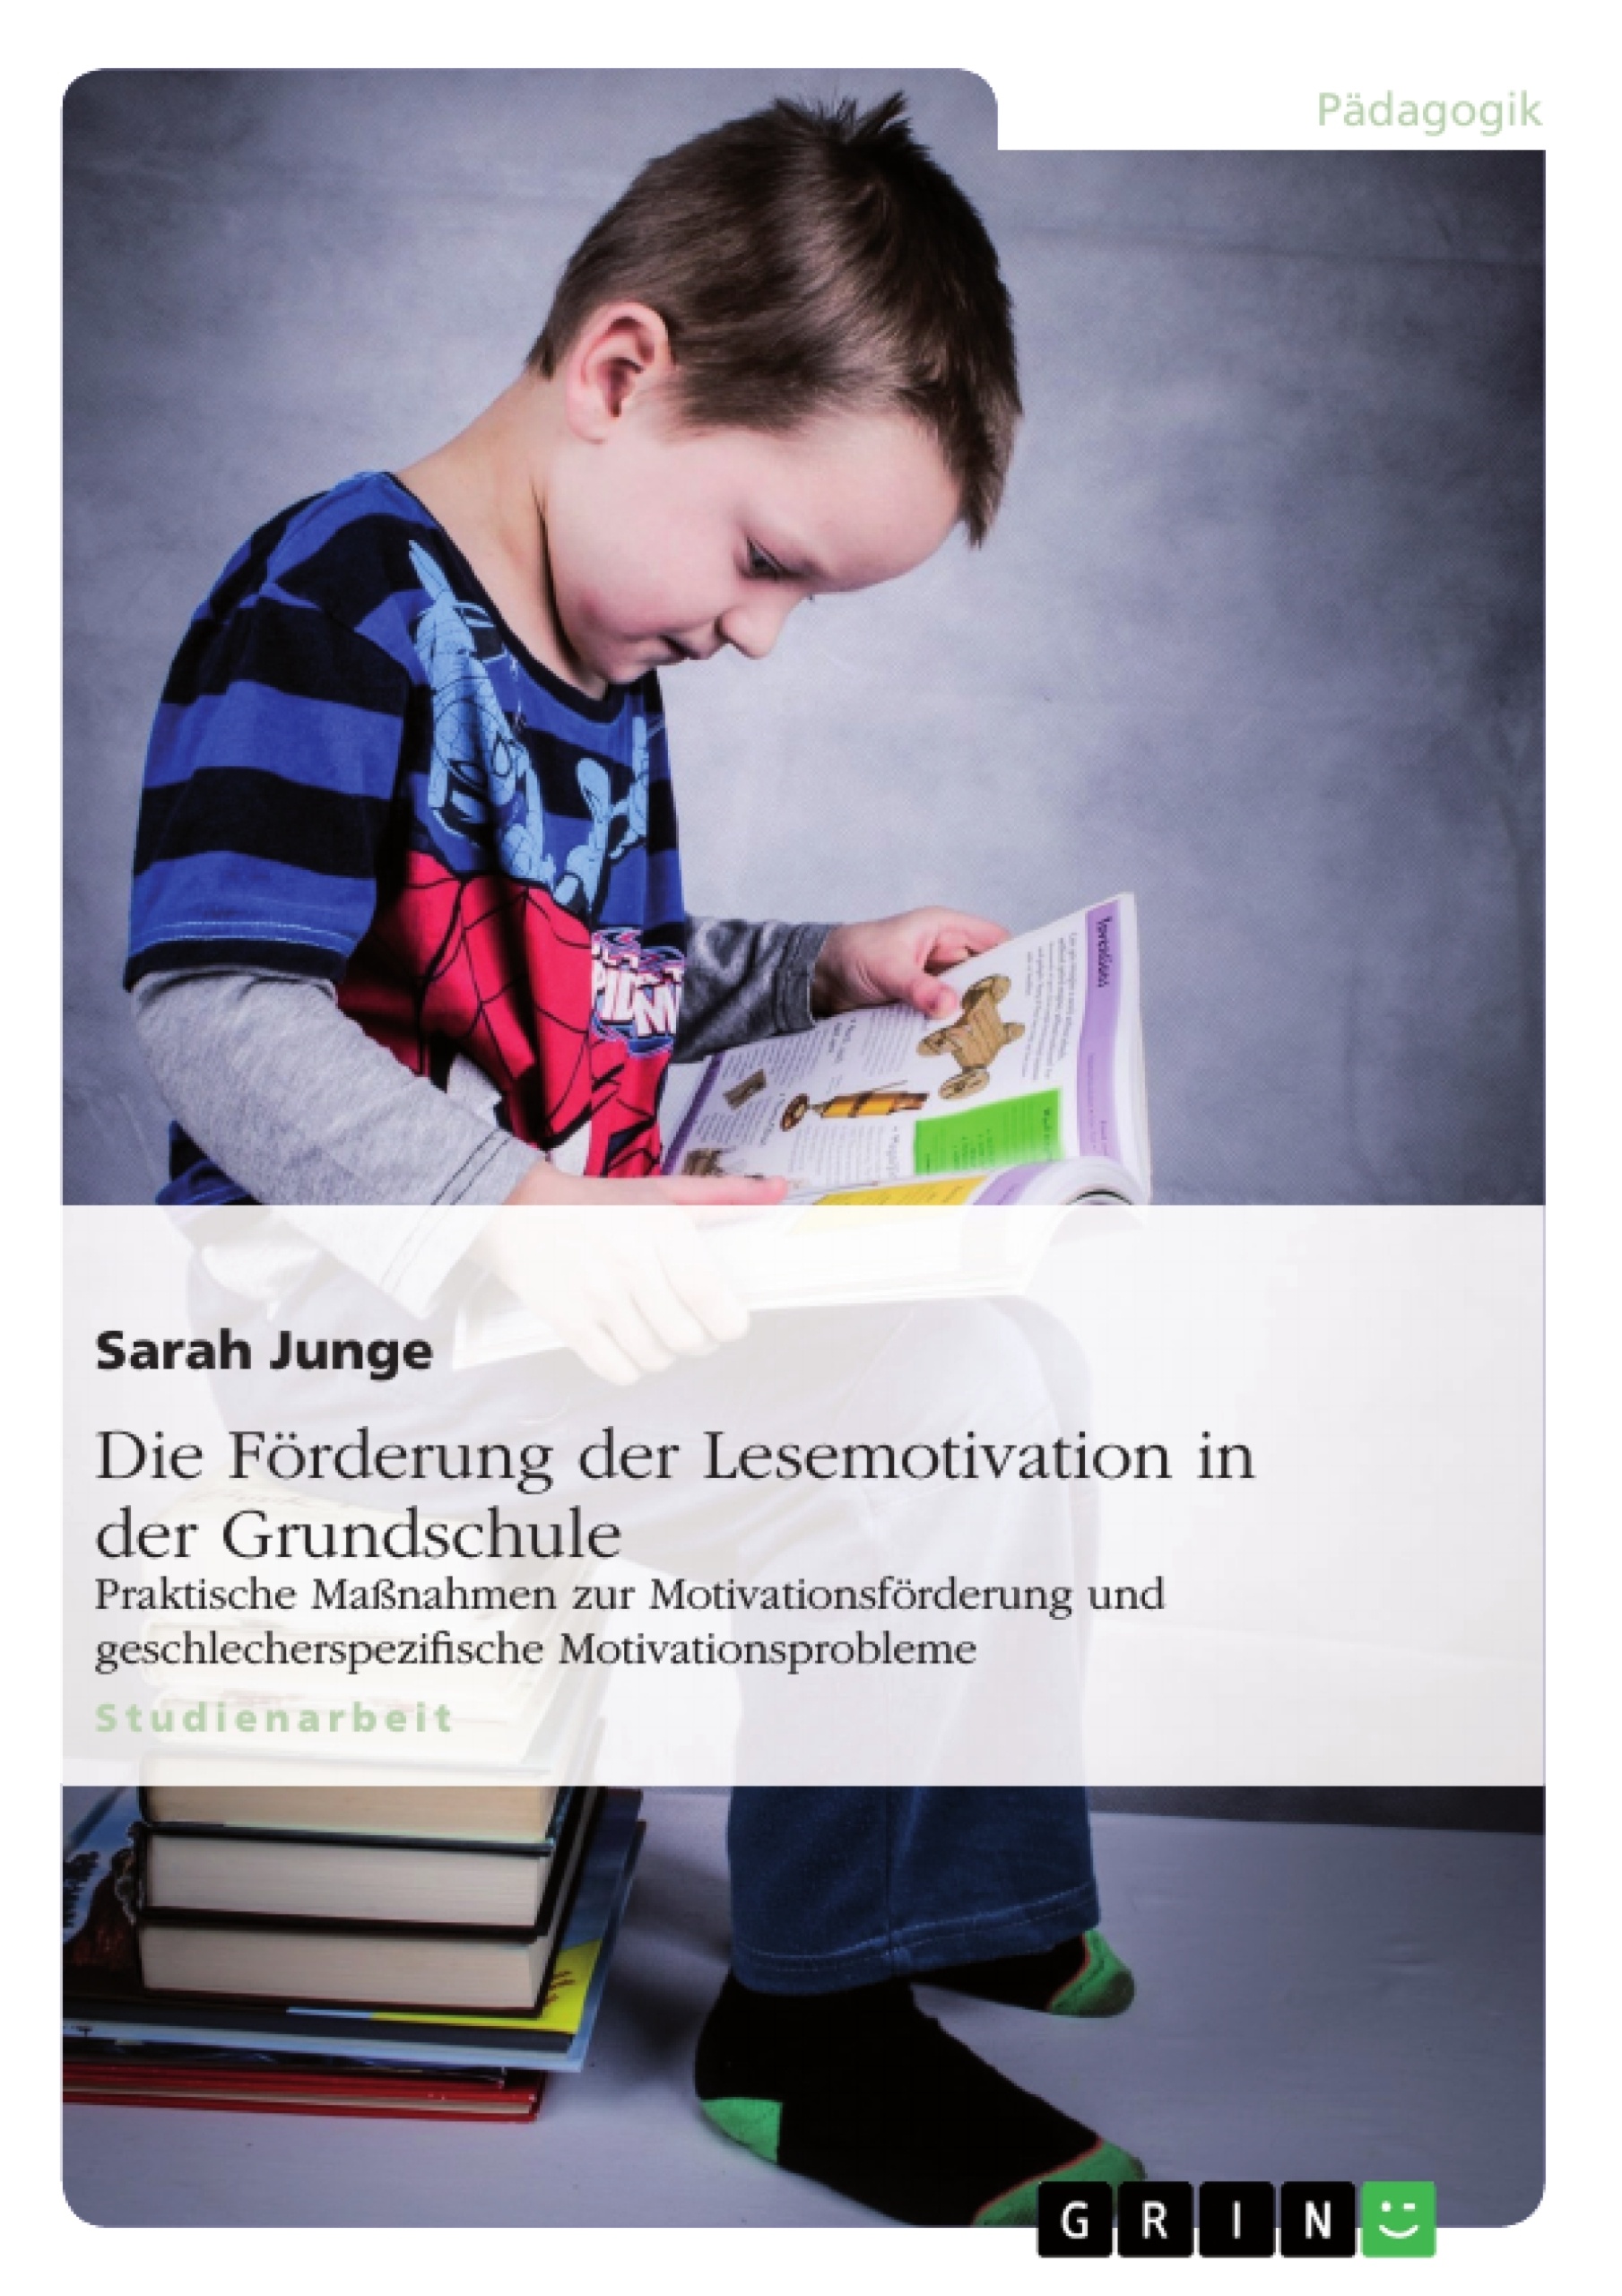 Title: Die Förderung der Lesemotivation in der Grundschule